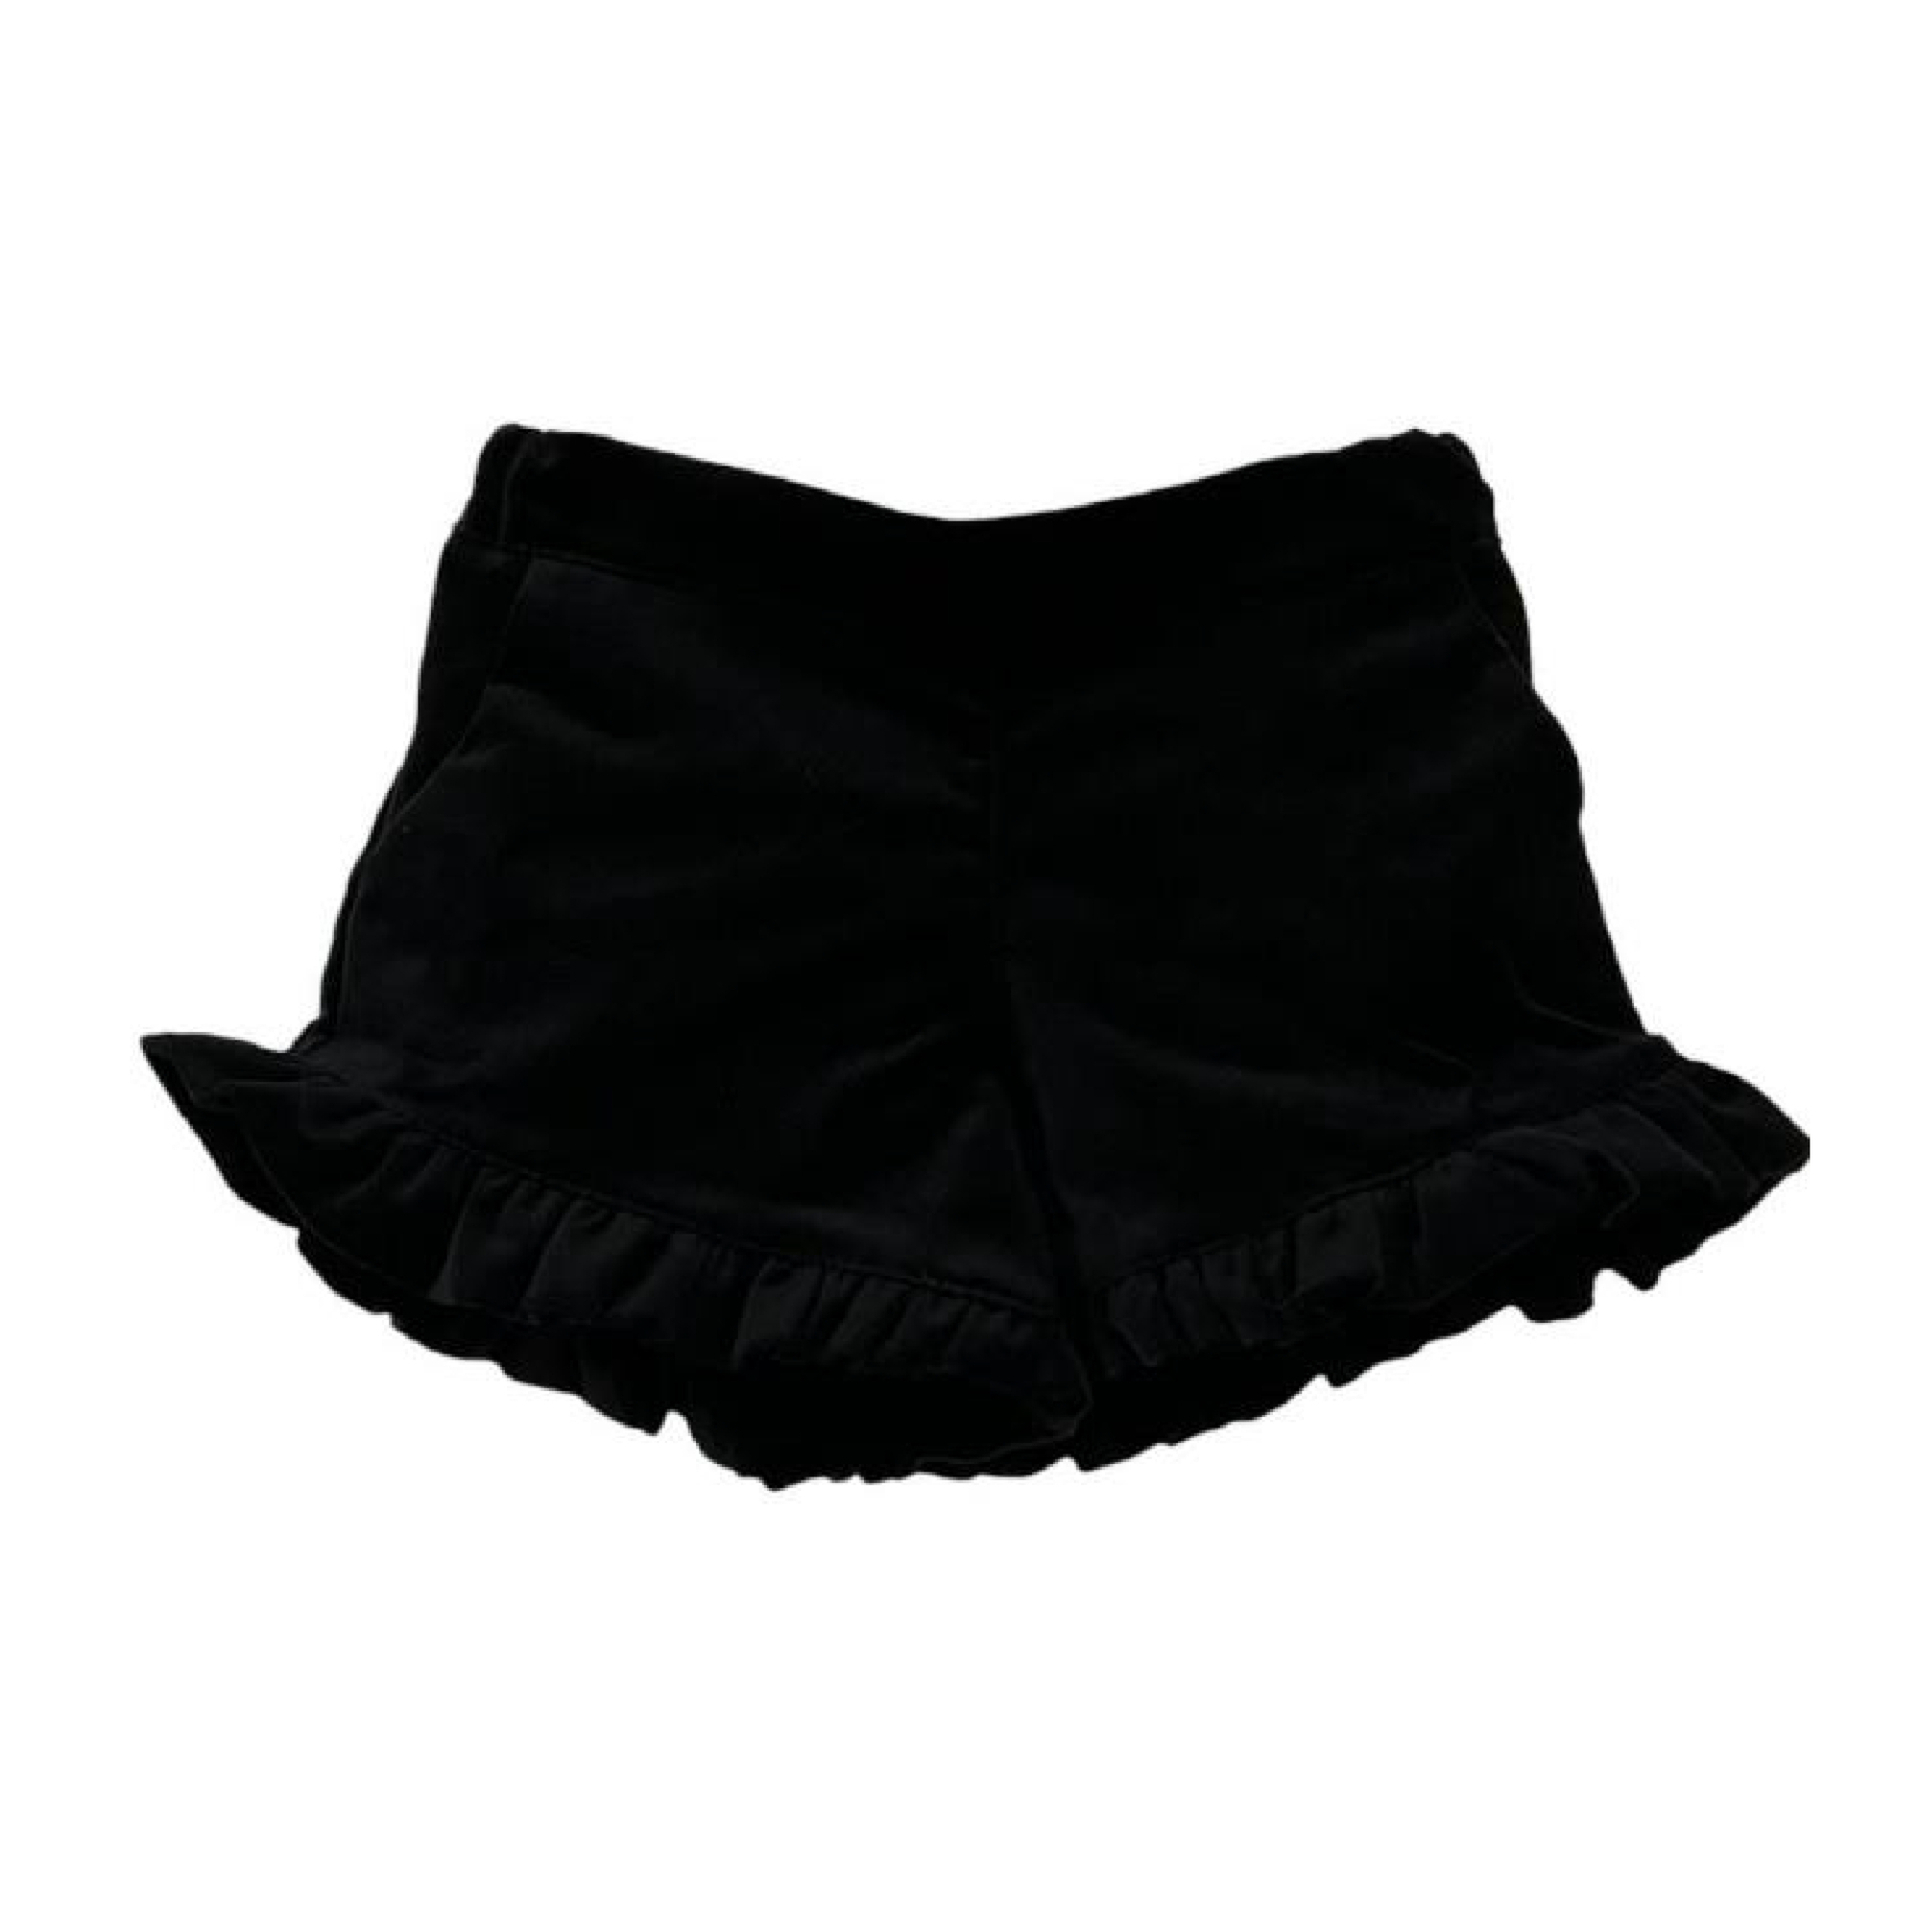 Black velvet shorts